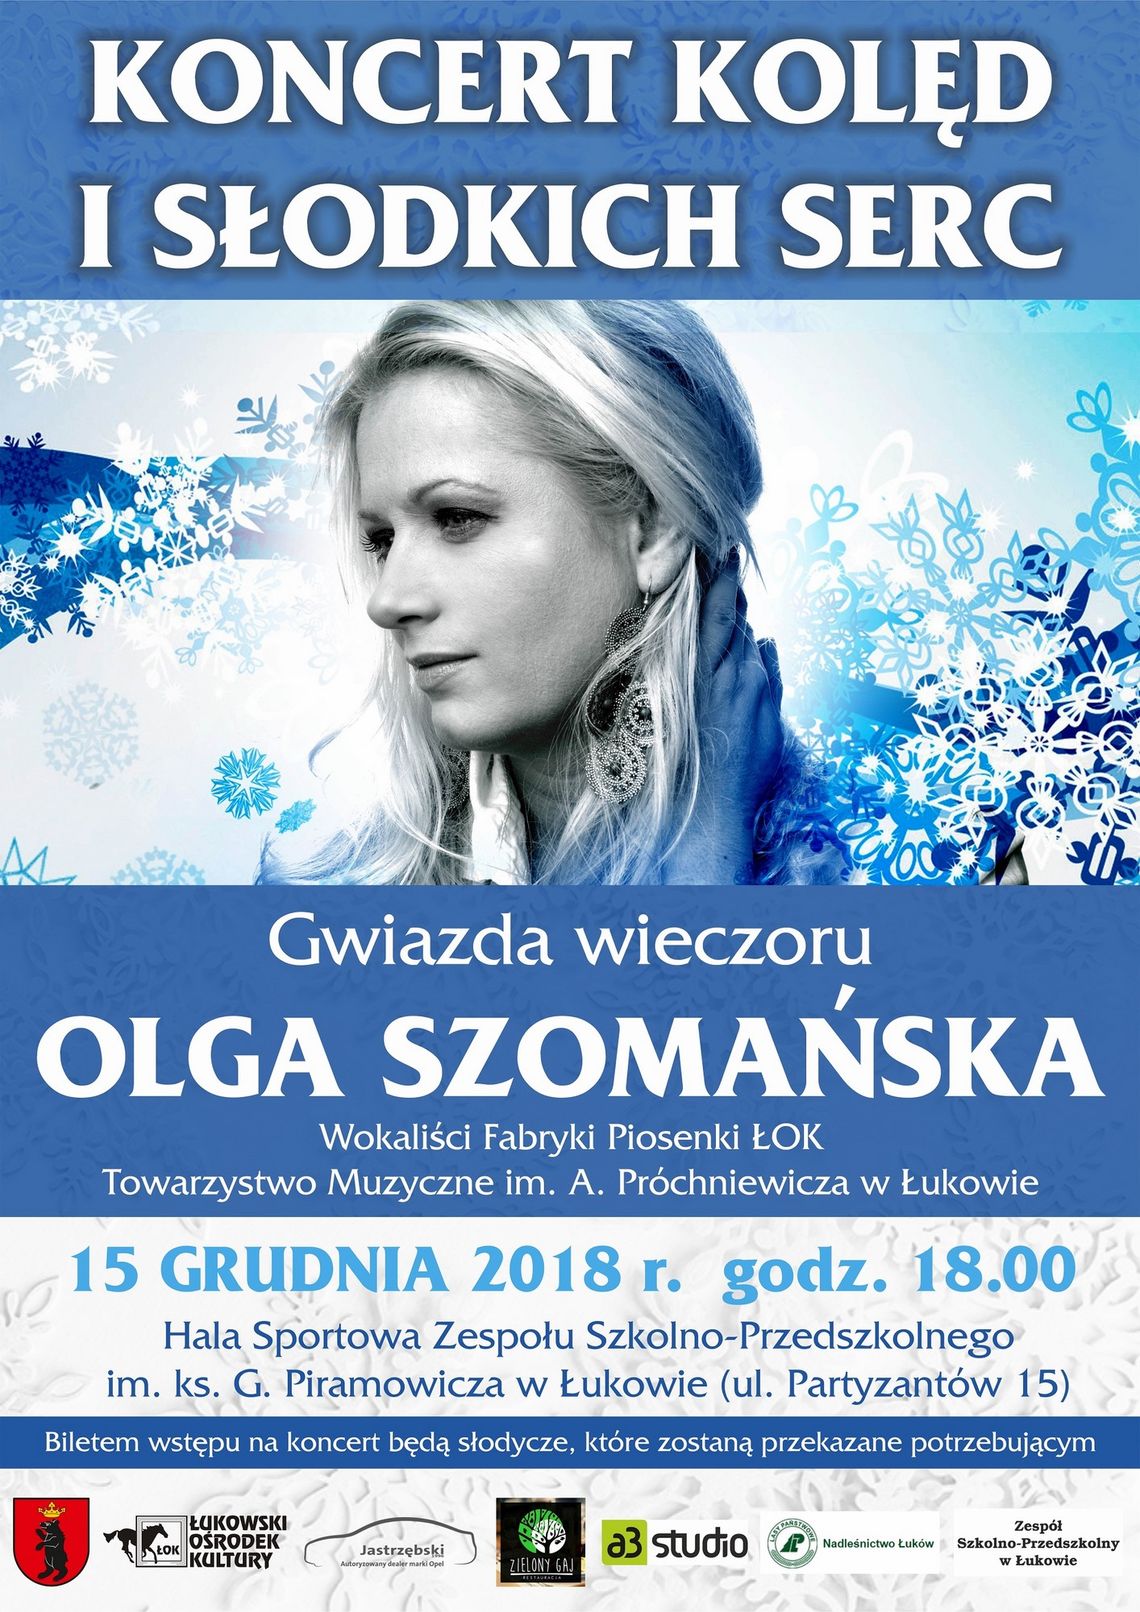 Koncert "Kolęd i Słodkich Serc" /15 grudnia 2018